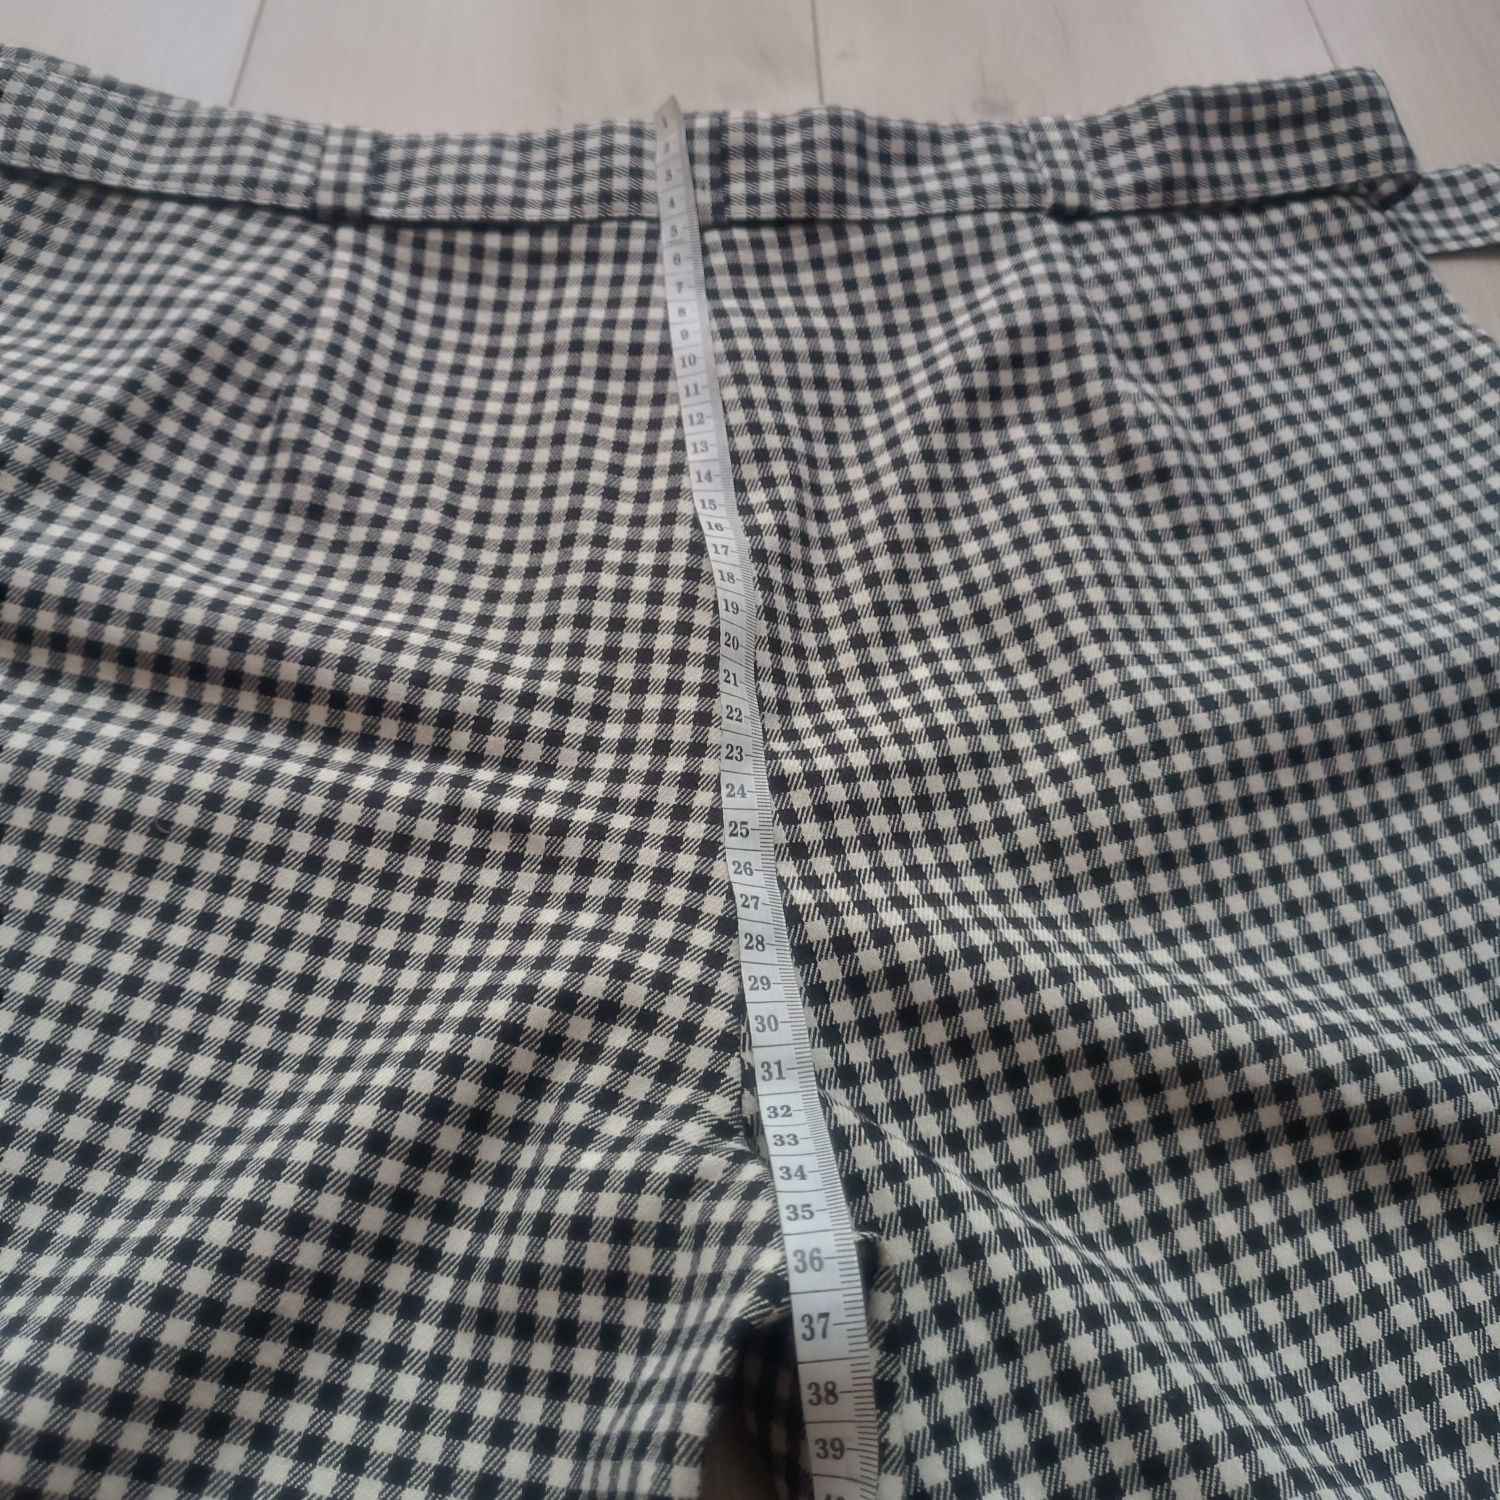 Spodnie krótkie spodenki szorty damskie krata f&f rozmiar 44 lato l